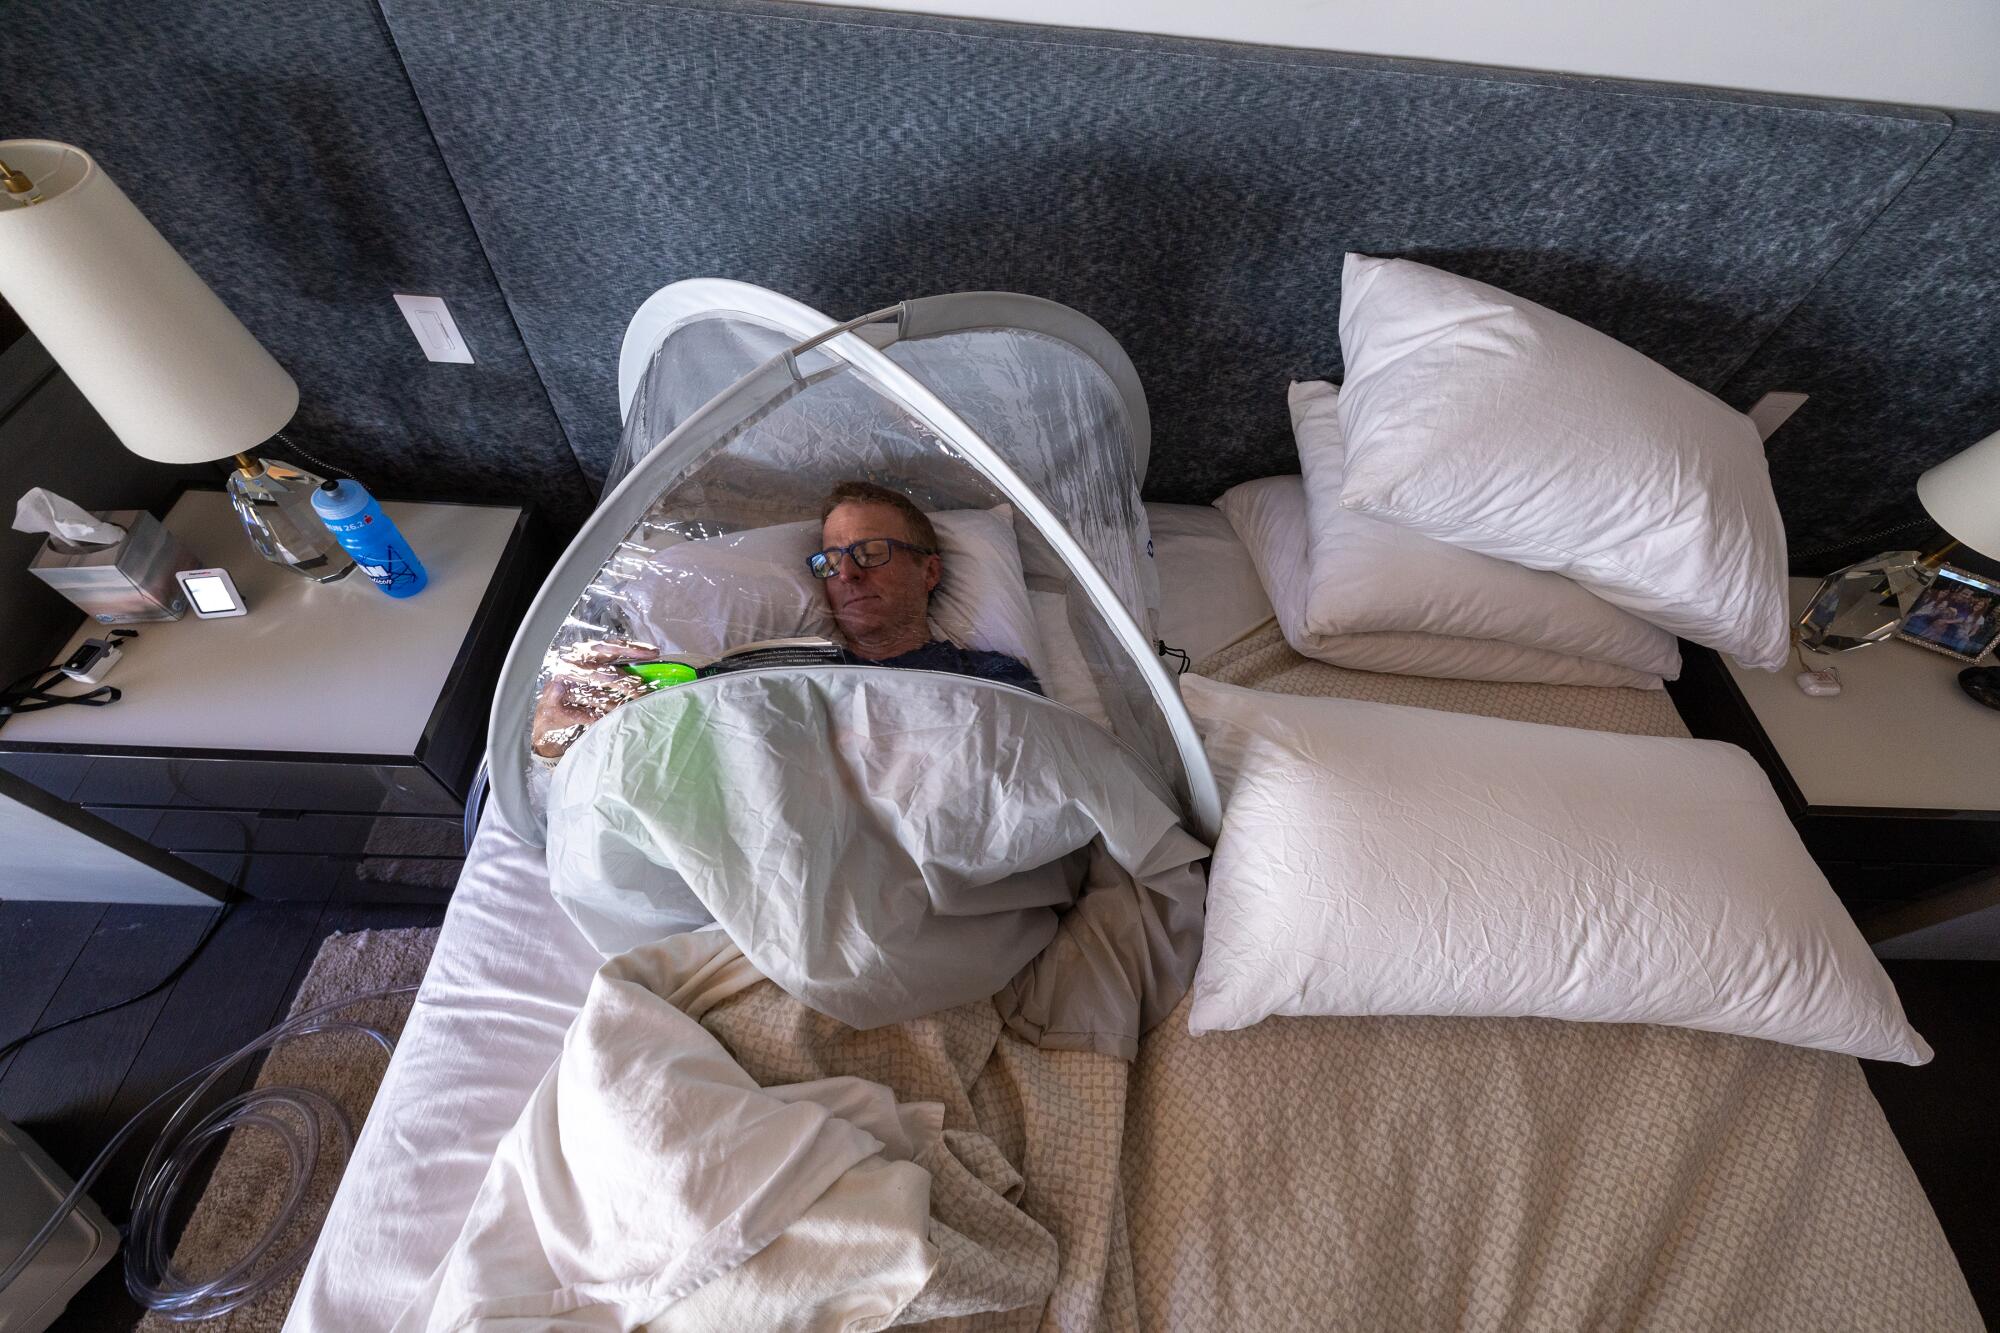 Um homem está deitado na cama com a parte superior do corpo coberta por uma tenda de plástico.